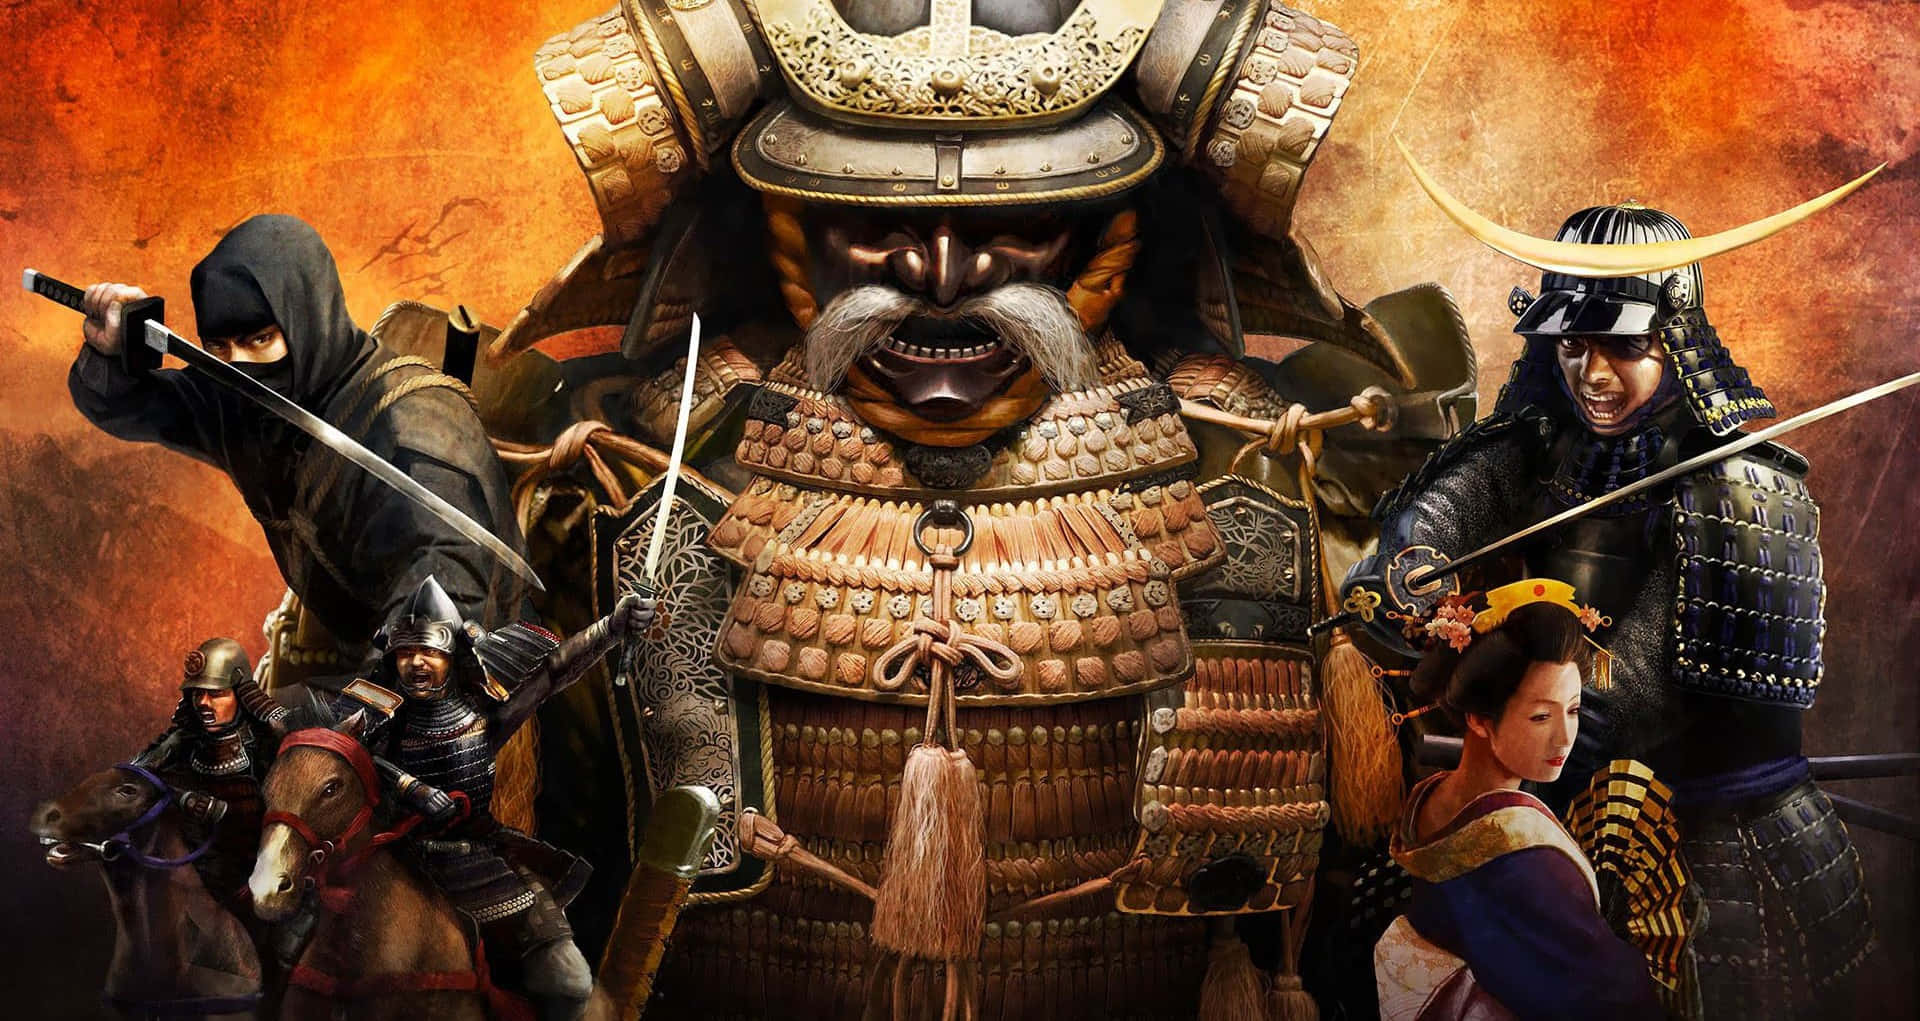 Shogun Warrior at Sunset Wallpaper